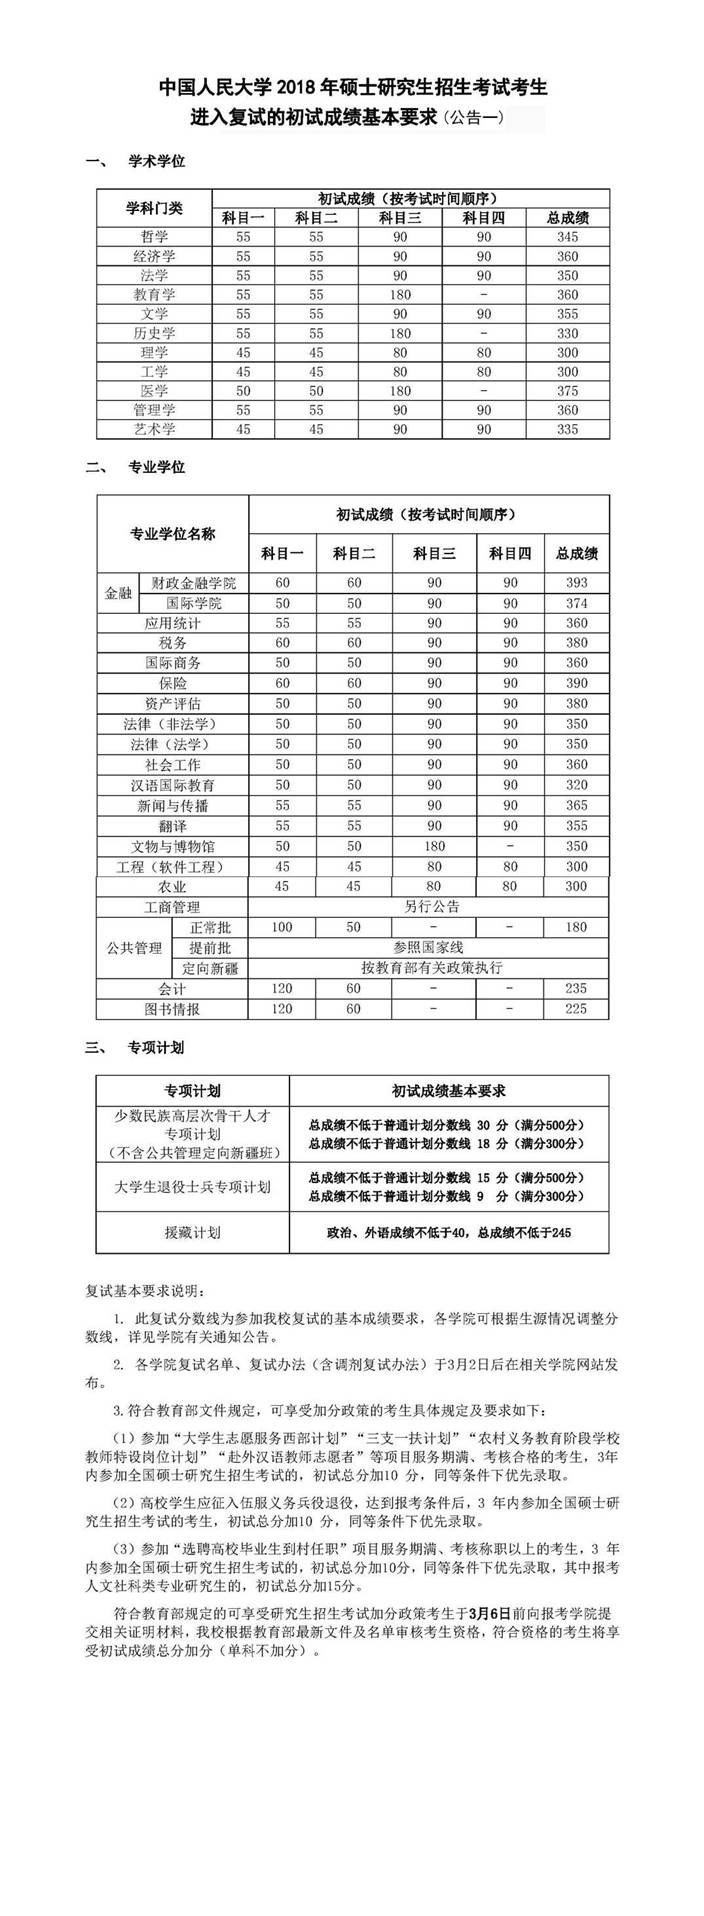 2018年中国人民大学复试分数线,20180305afdfed938c6ae9115554d157b0990f53.jpg,中国人民大学,第2张